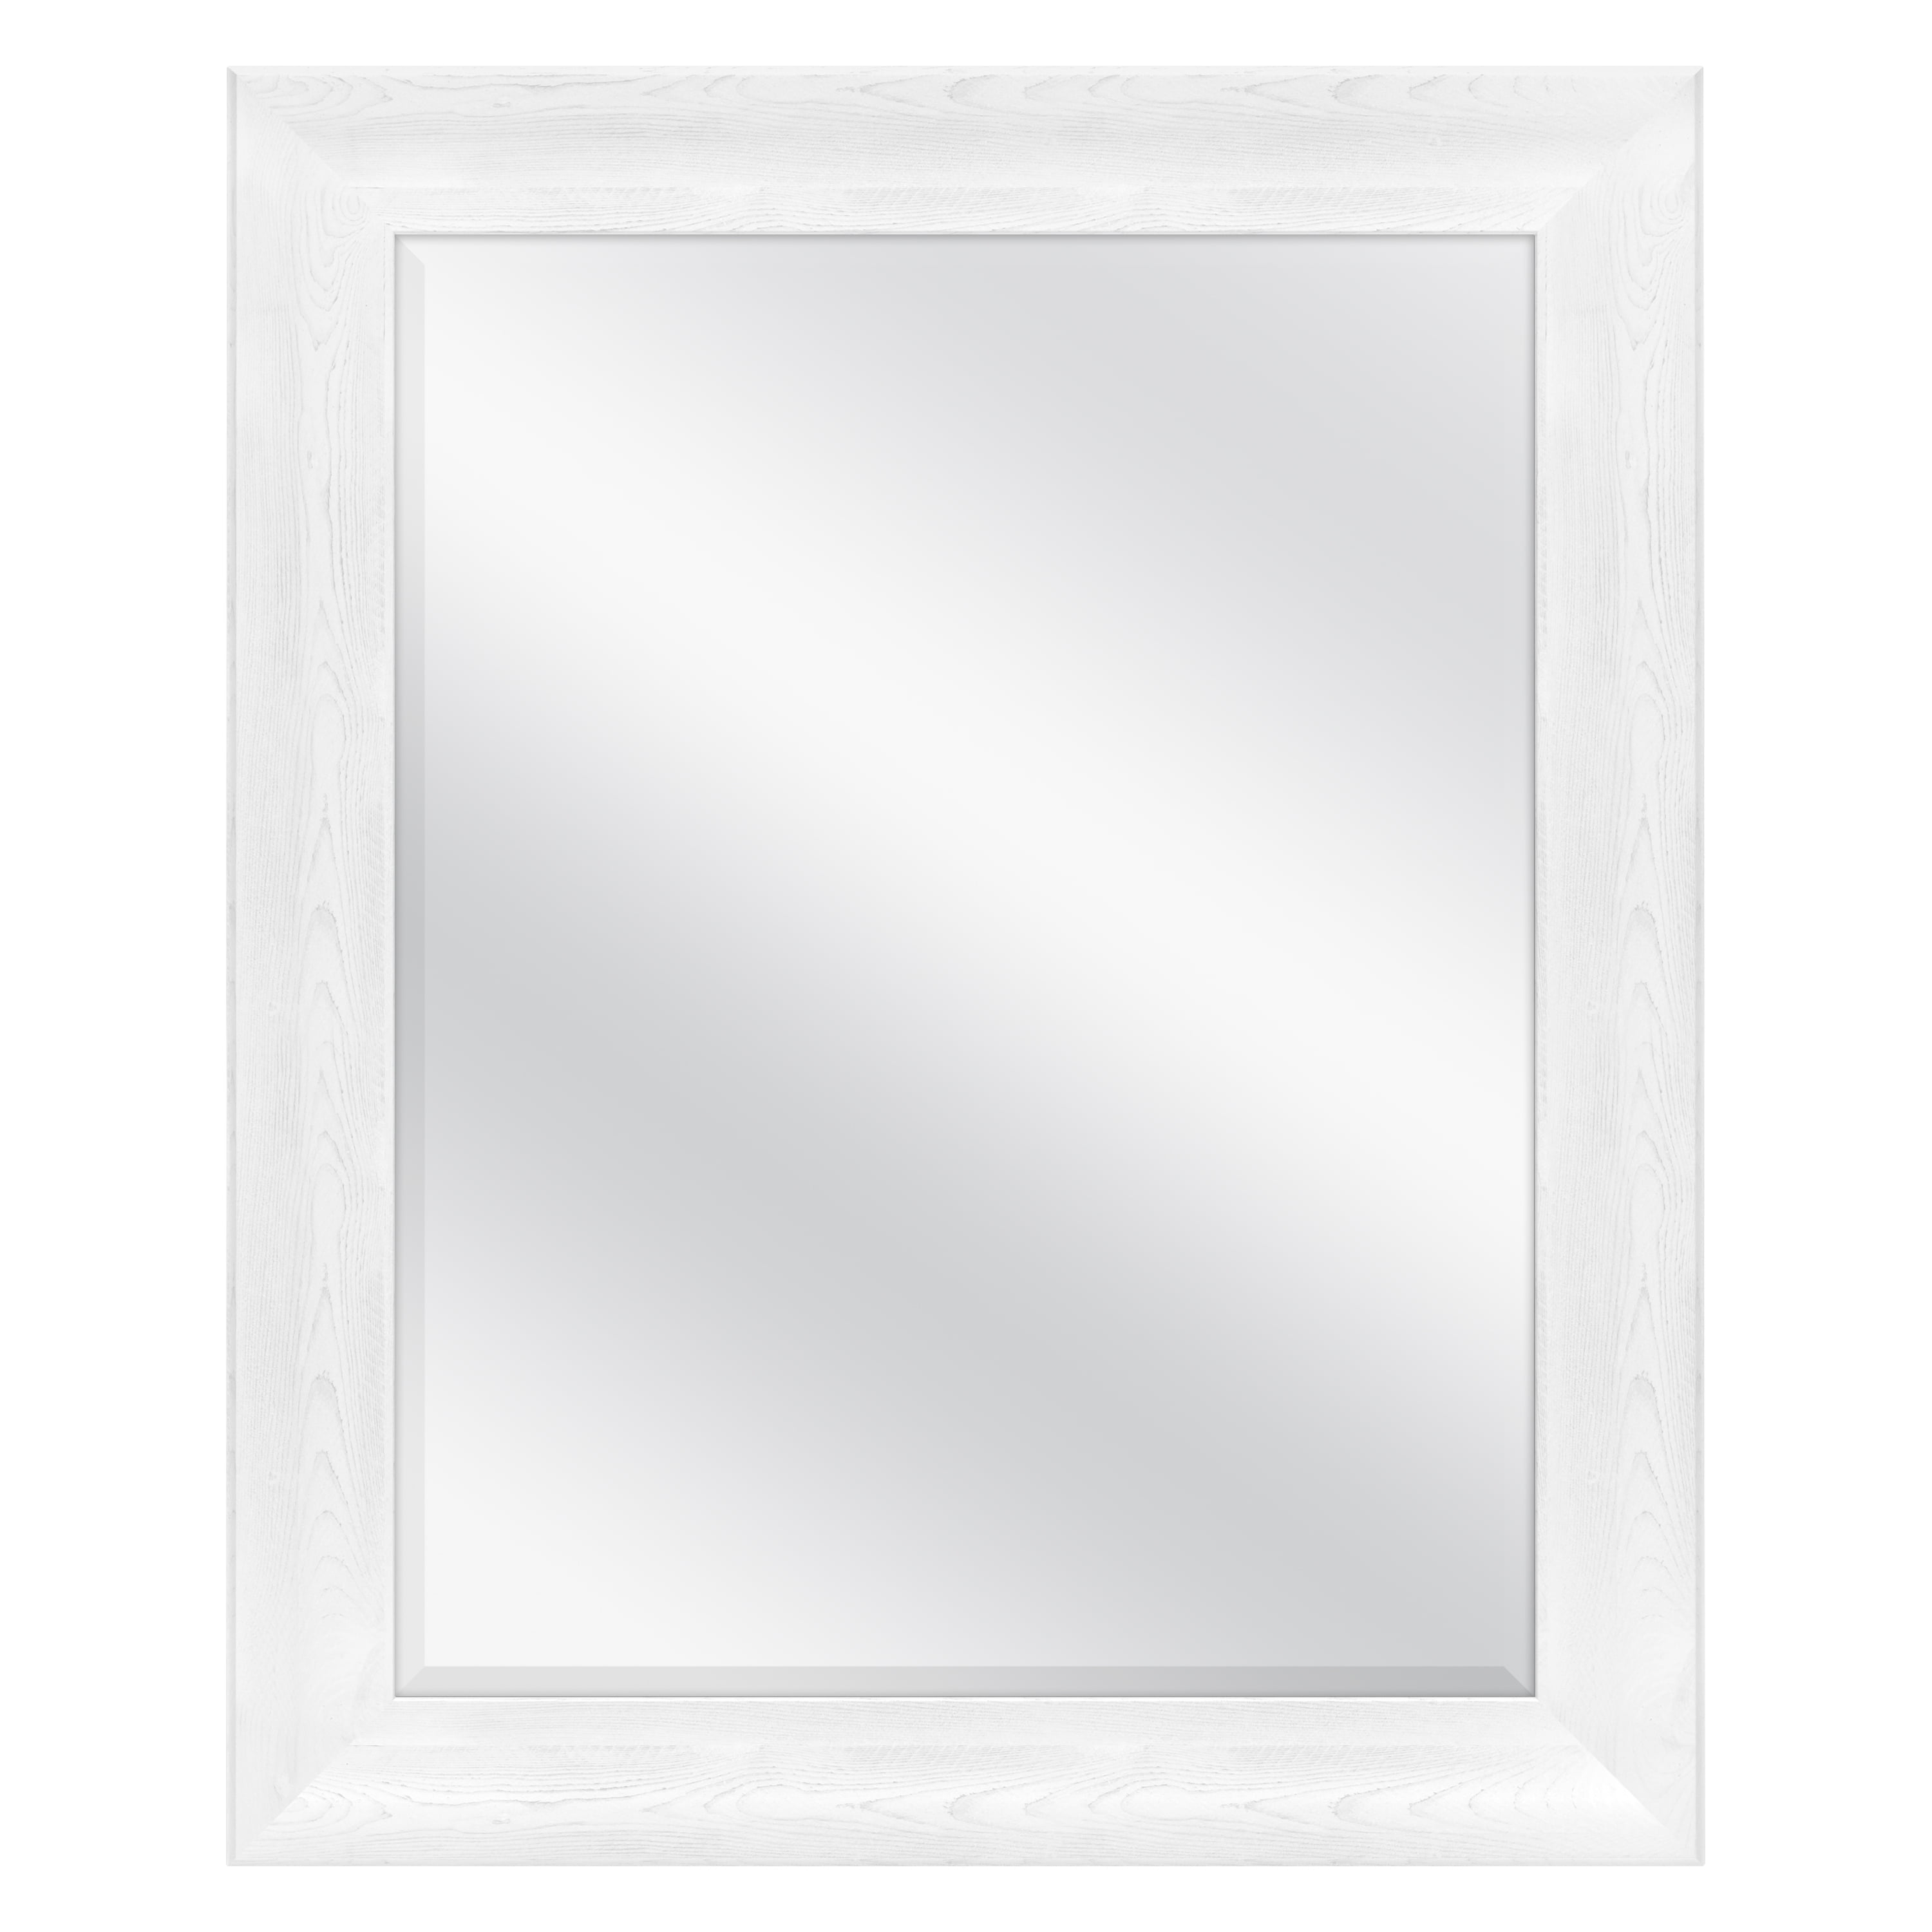 Bevel Mirror Glass 16 x 28 LIGHT OAK FULL LENGTH MIRRORS Framed